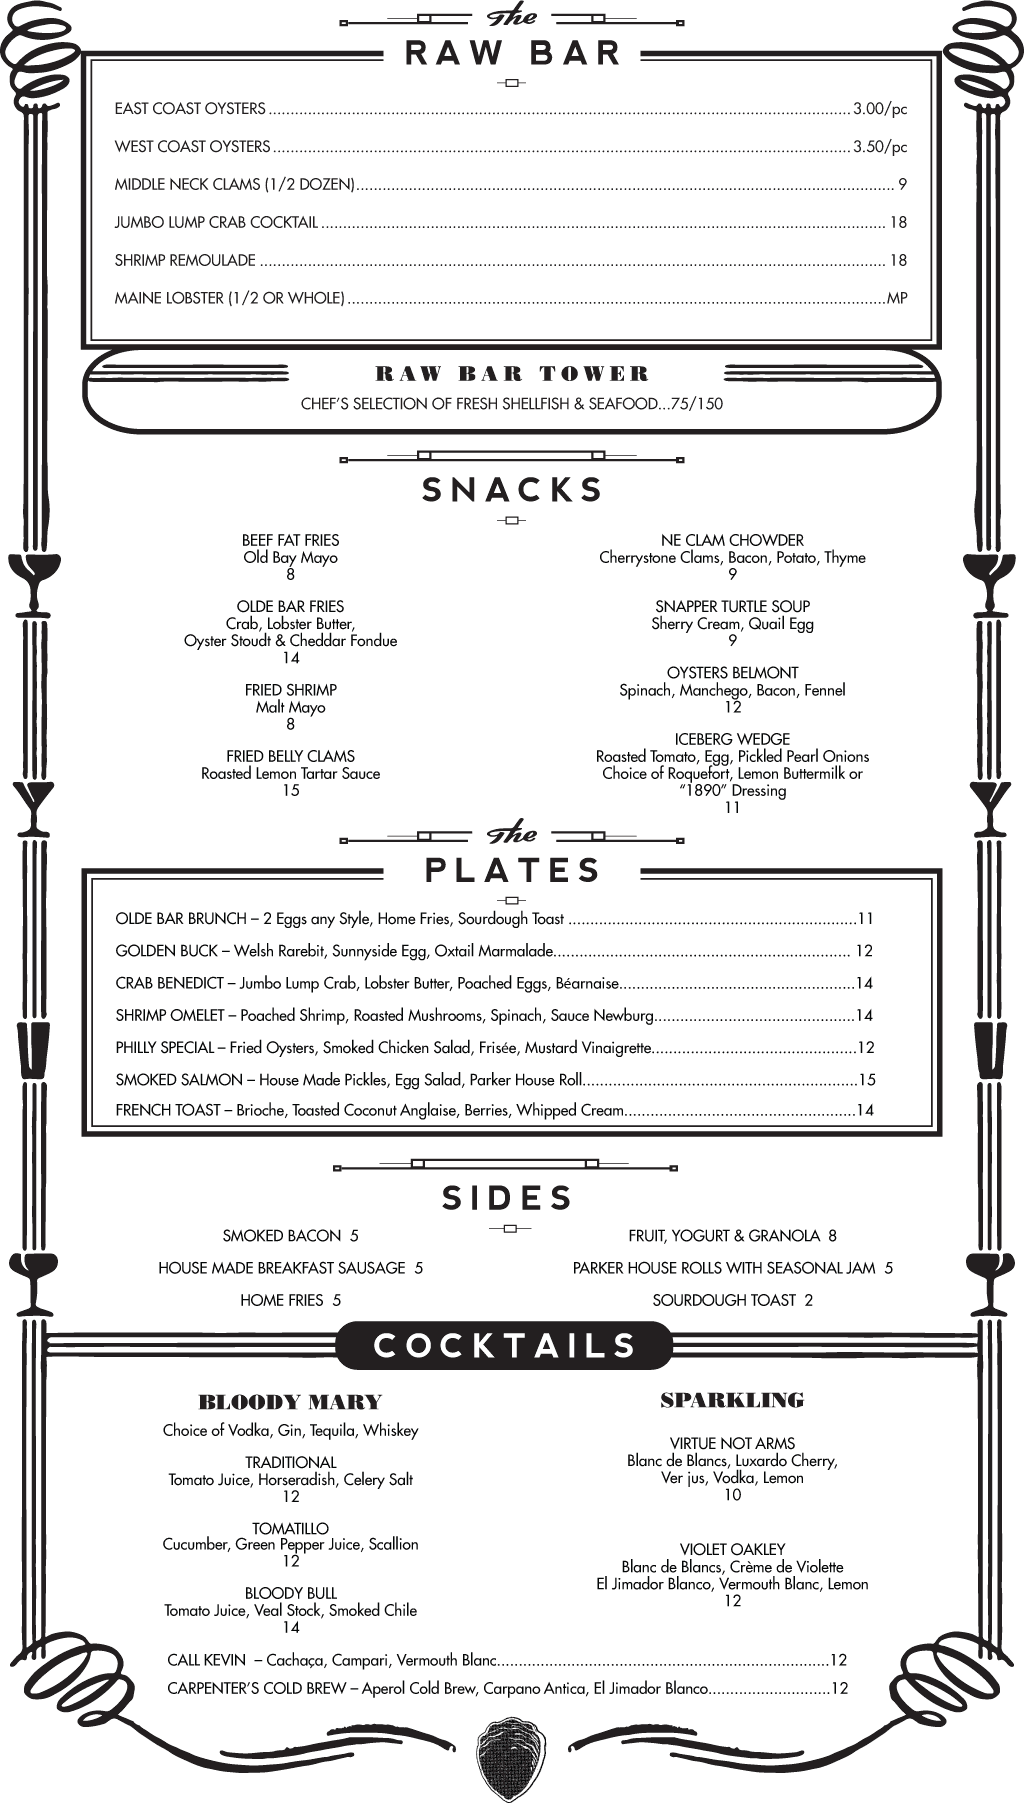 olde-bar-brunch-menu-050815